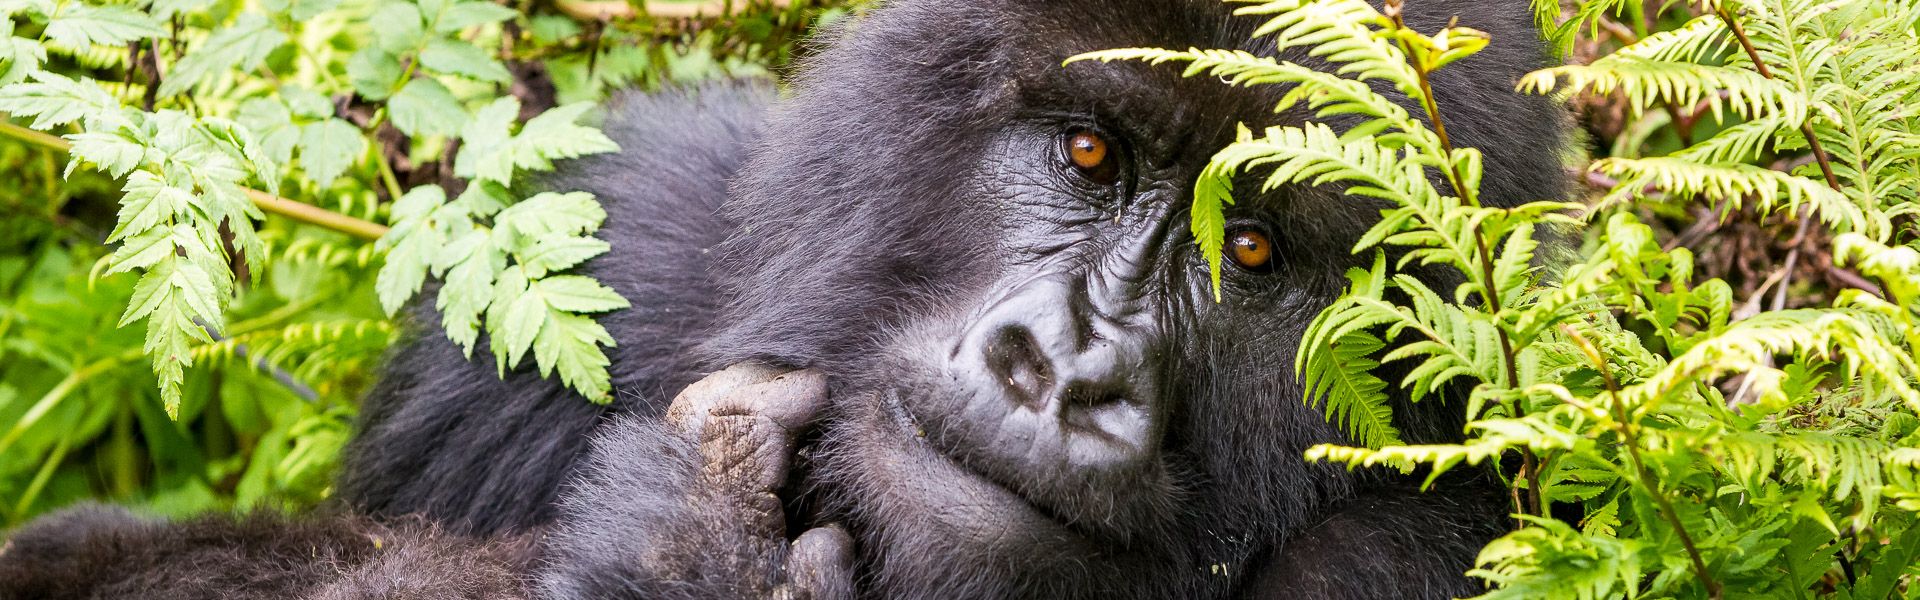 Auge in Auge mit dem Gorilla |  Holger Wagenbreth / Chamleon